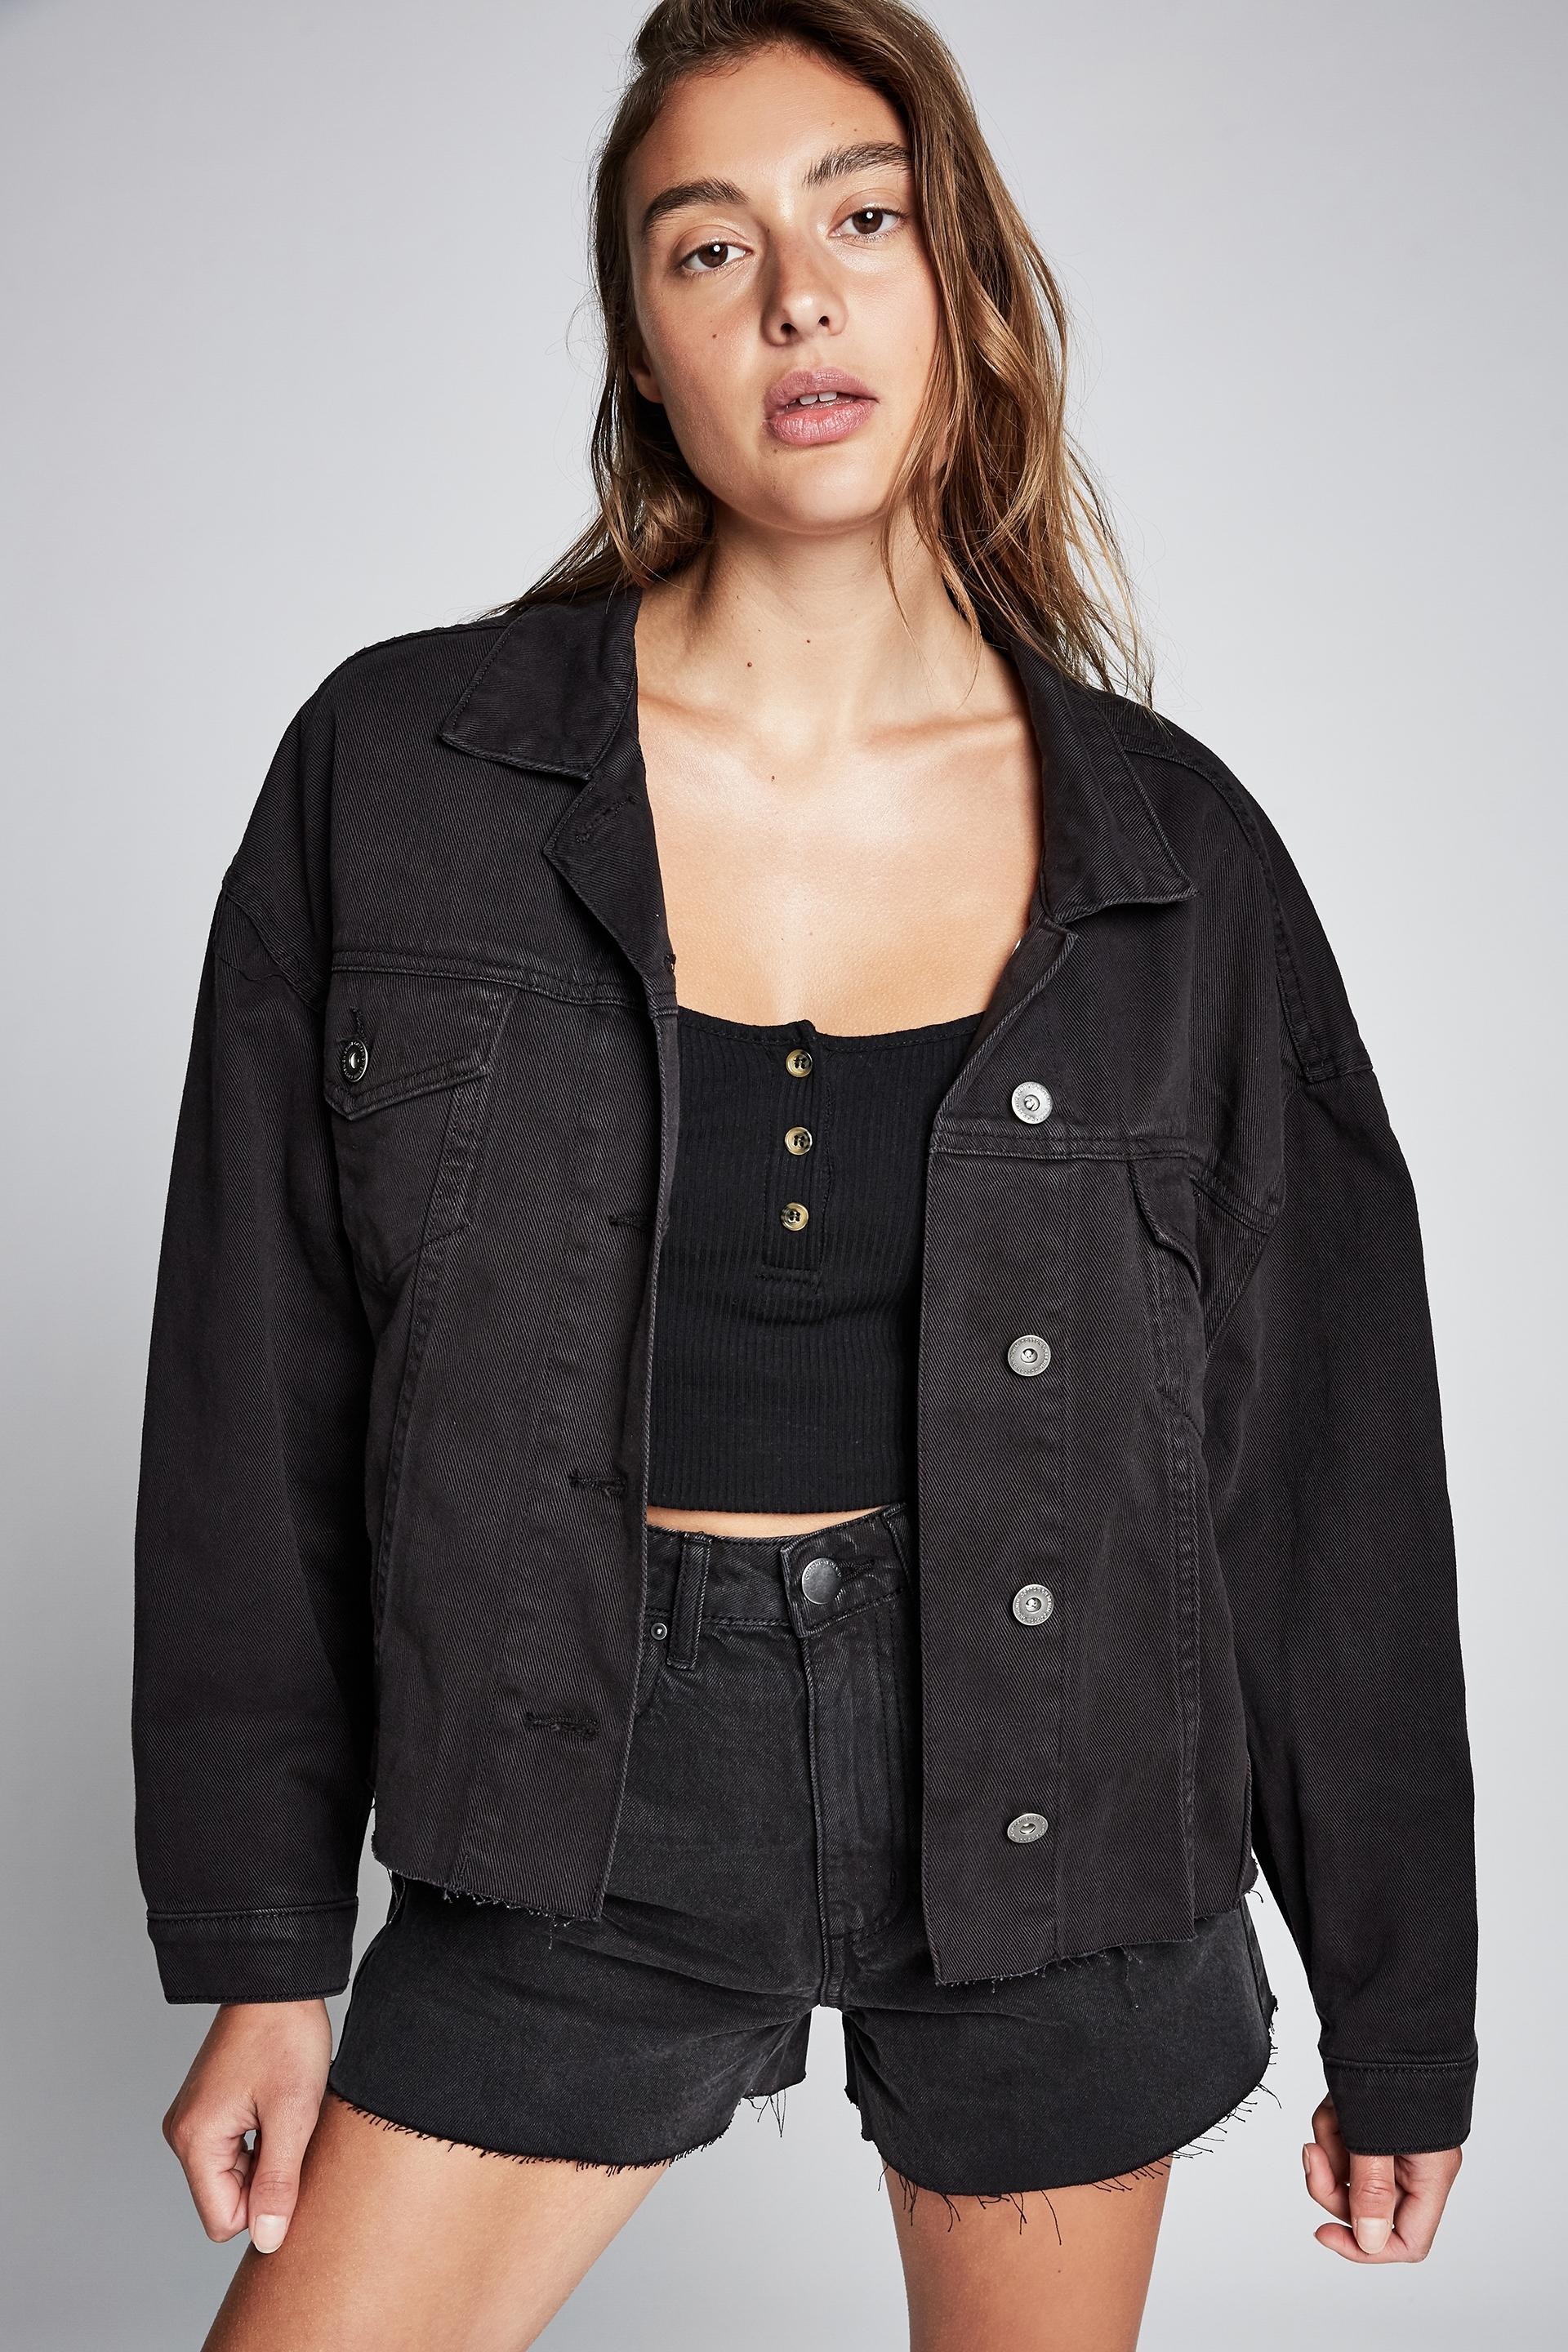 Os denim jacket - washed black Cotton On Jackets | Superbalist.com